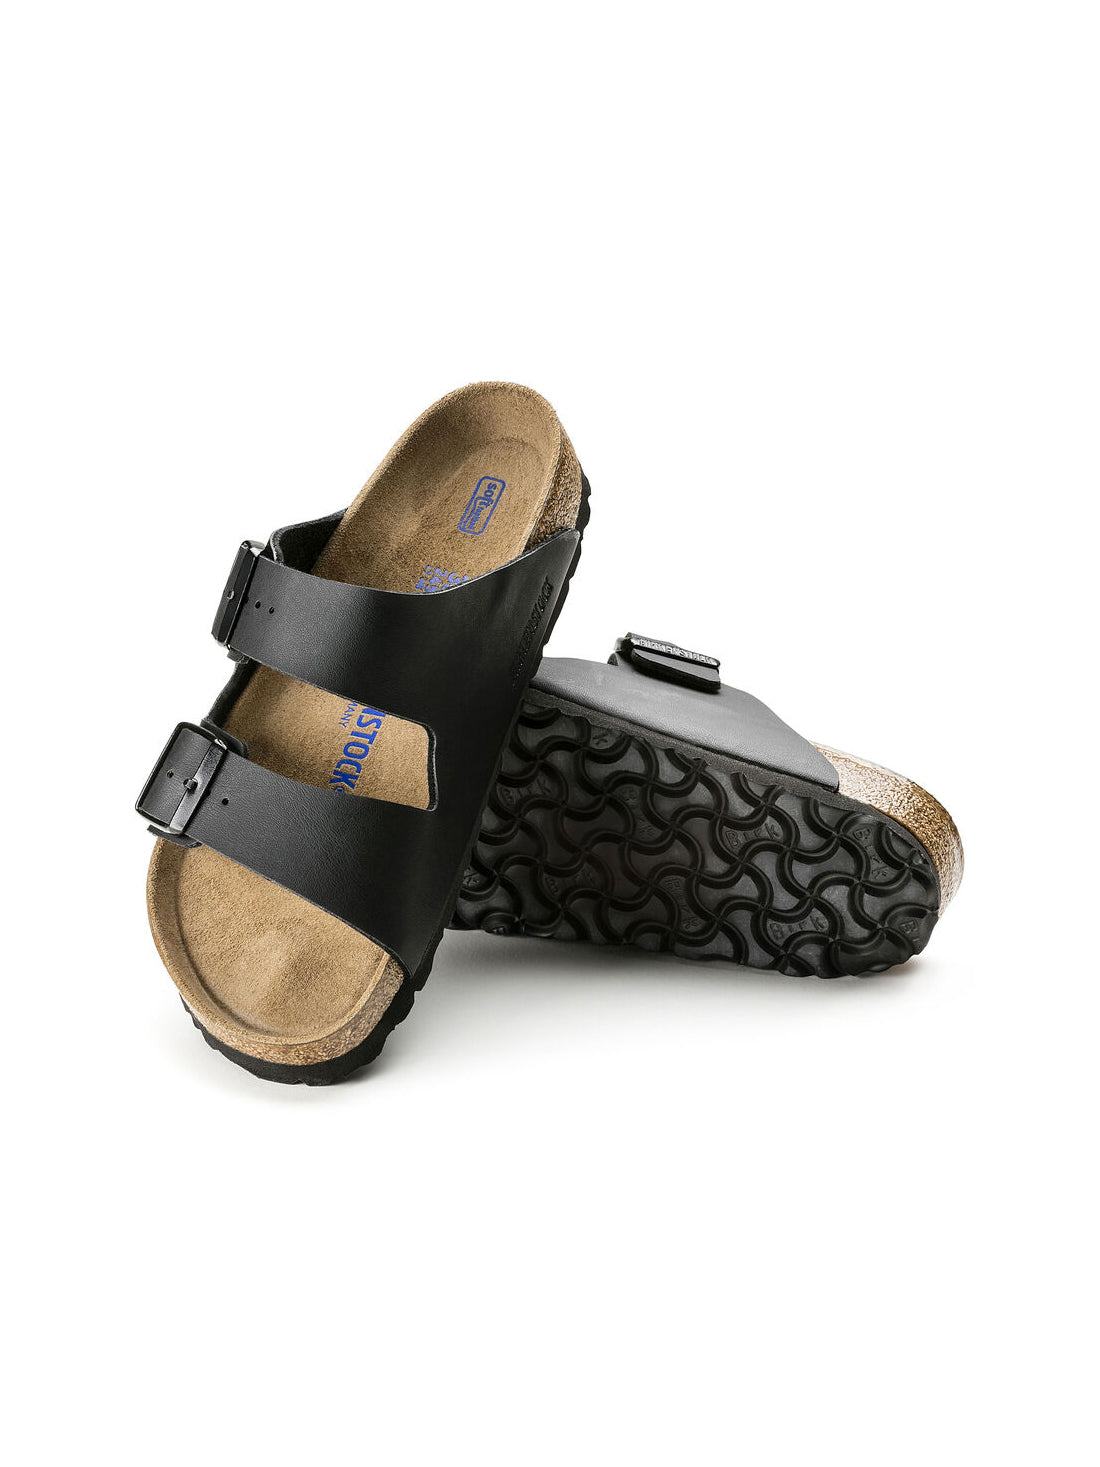 birkenstock arizona soft footbed sandal in birko-flor black narrow